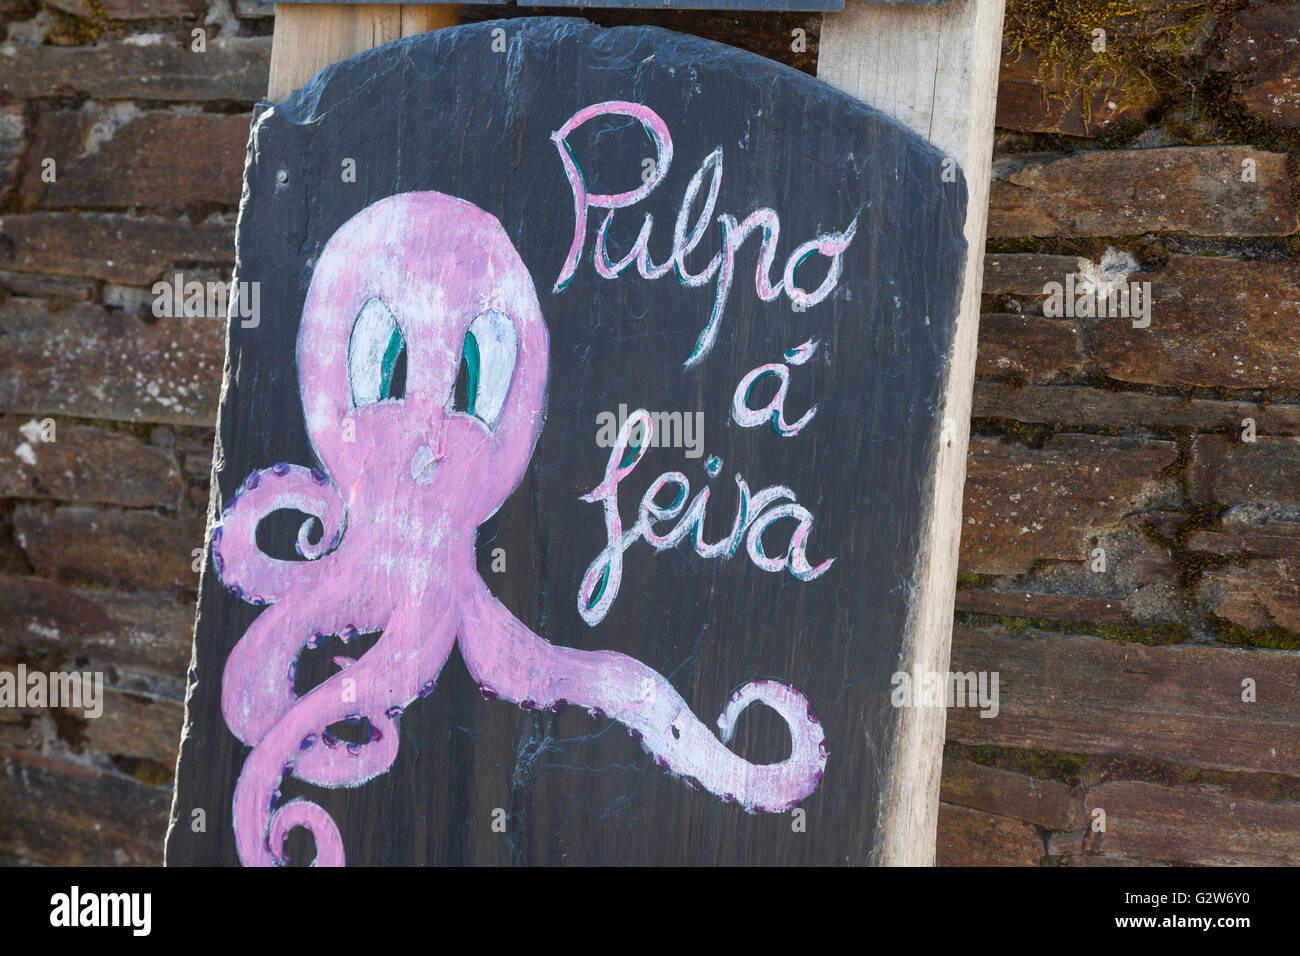 O Cebreiro, Espagne : Sign advertising Pulpo á feira dans un restaurant dans le village. Banque D'Images